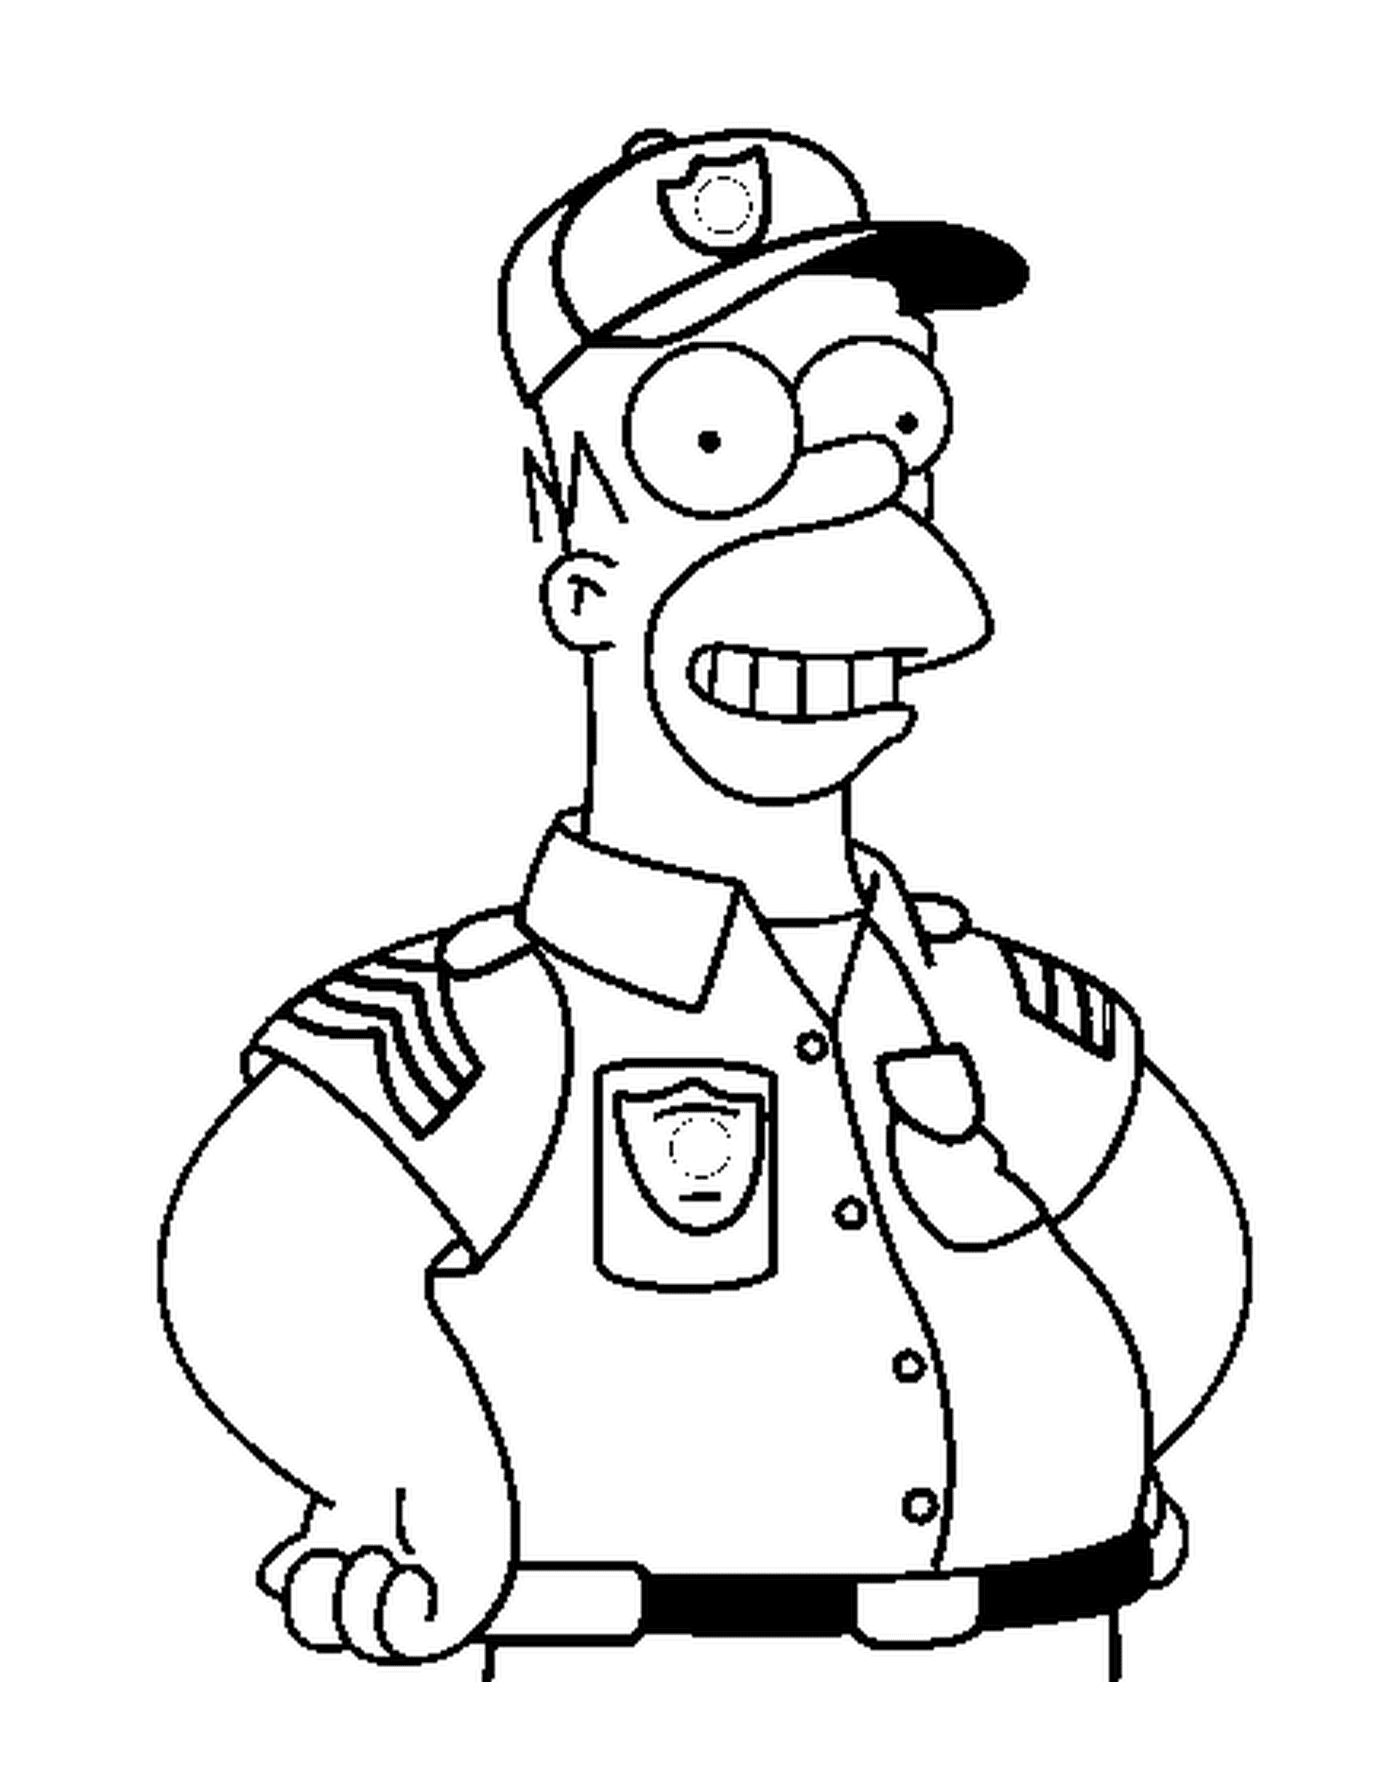  Homero como un valiente policía 